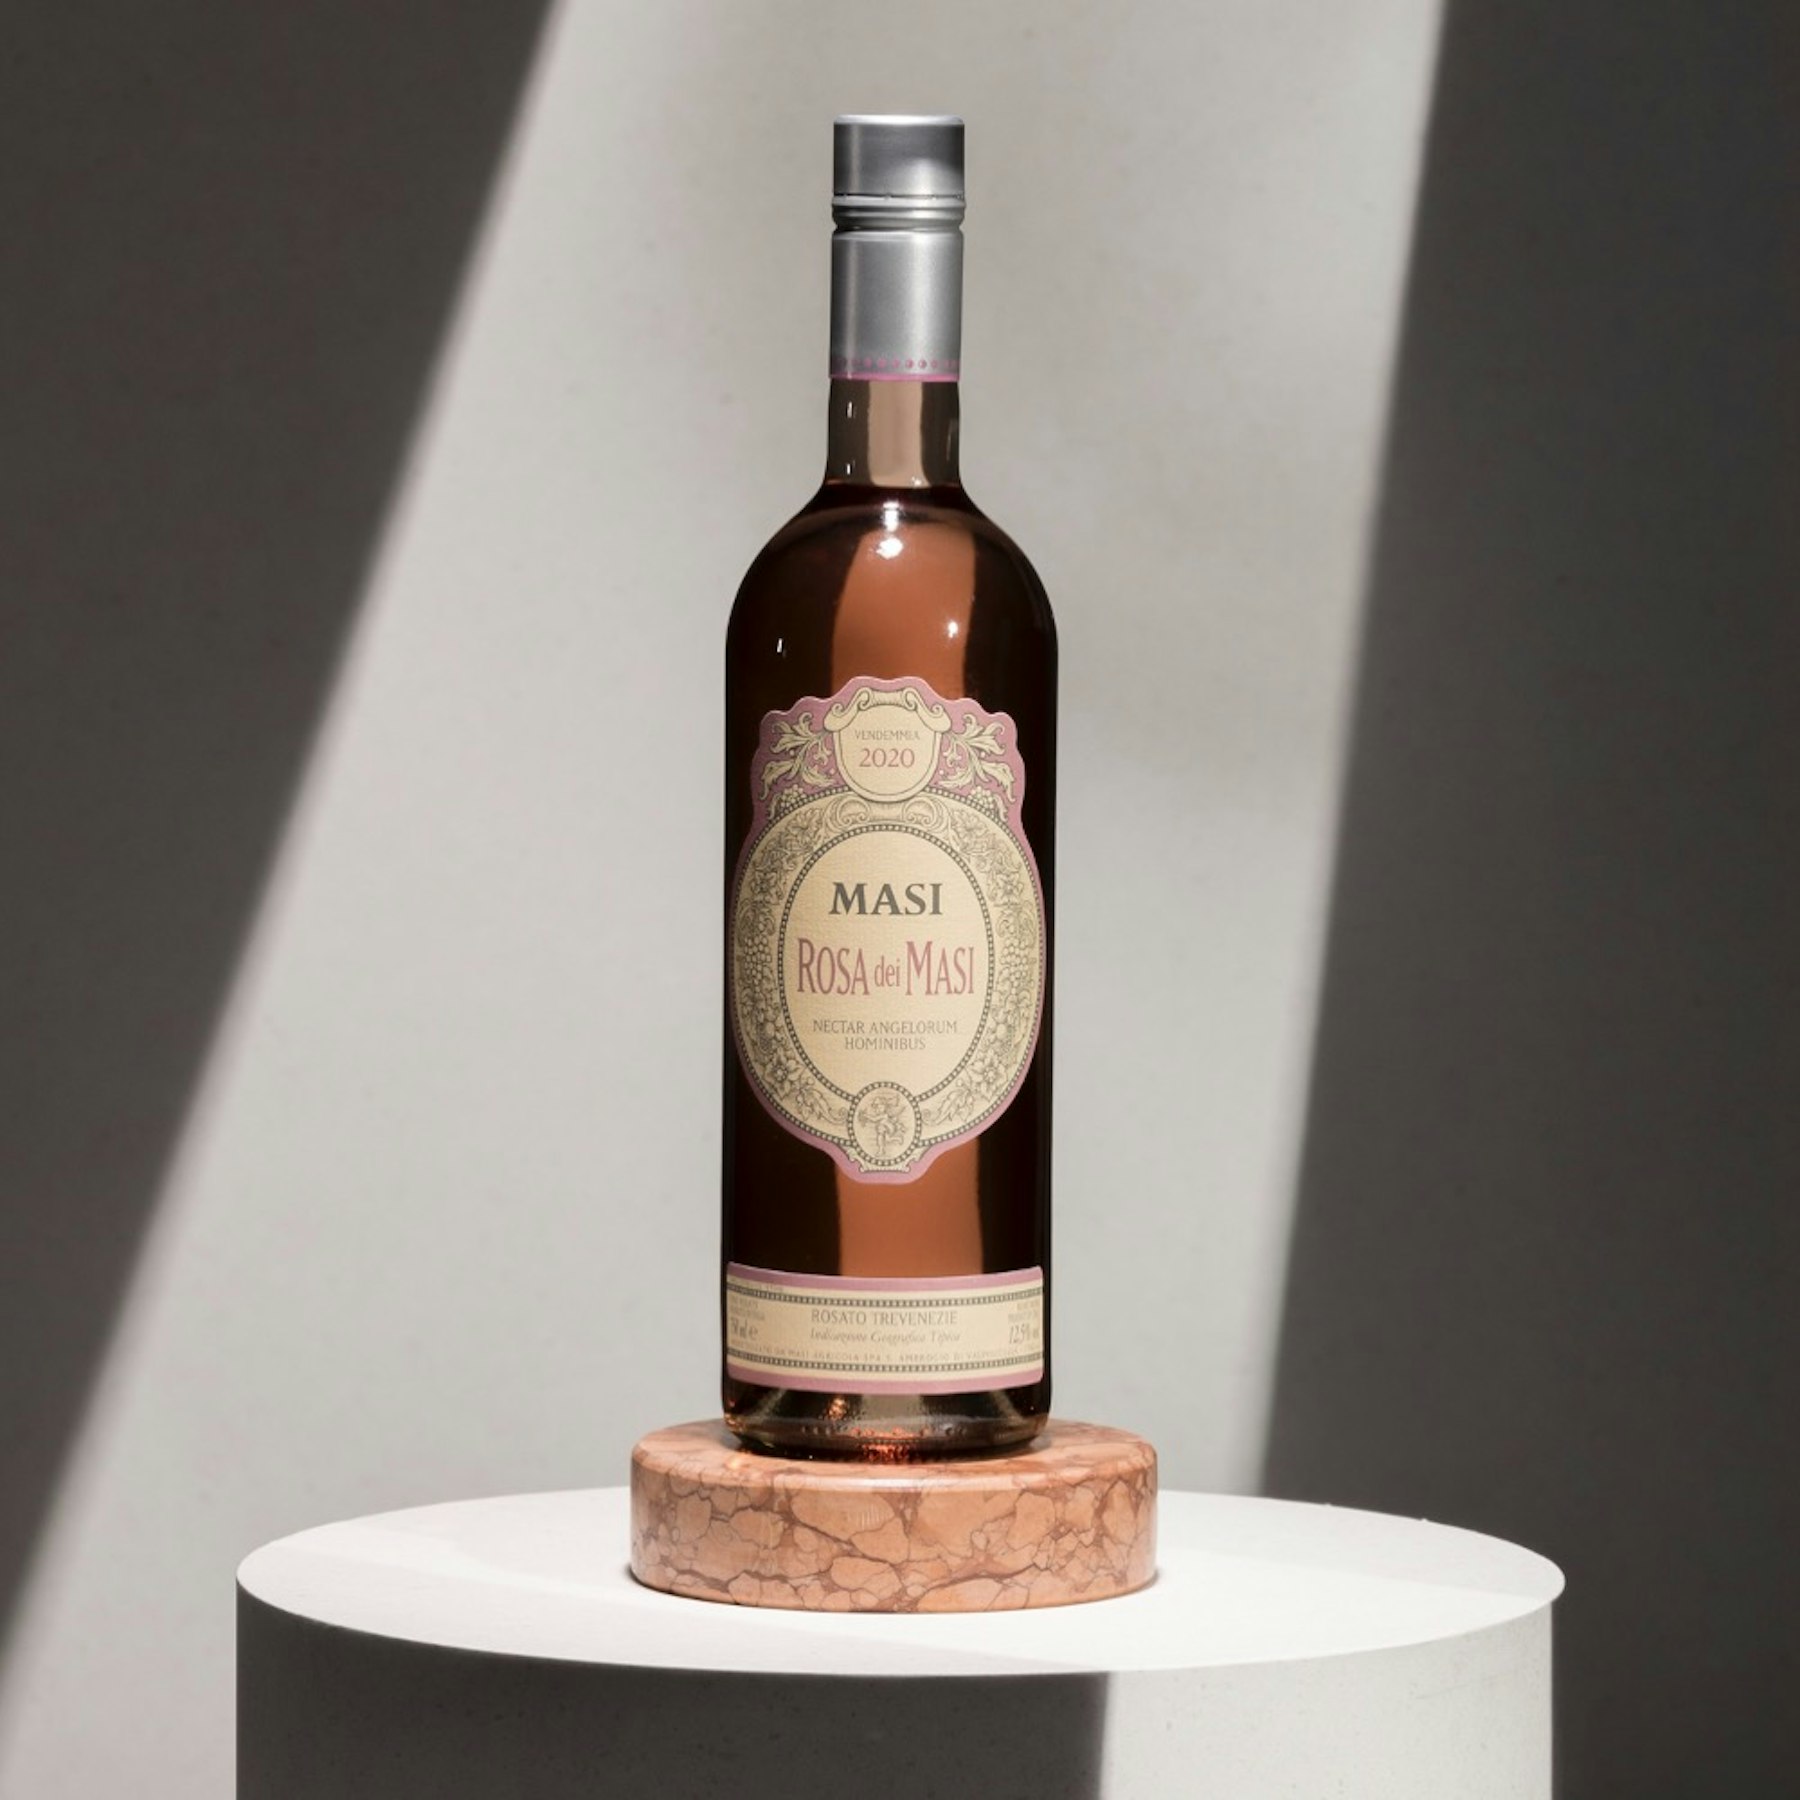  Ein frischer und fruchtiger Rosè, aber auch komplex und elegant dank der angewandten Appassimento-Technik. Ein superventiatischer Wein.